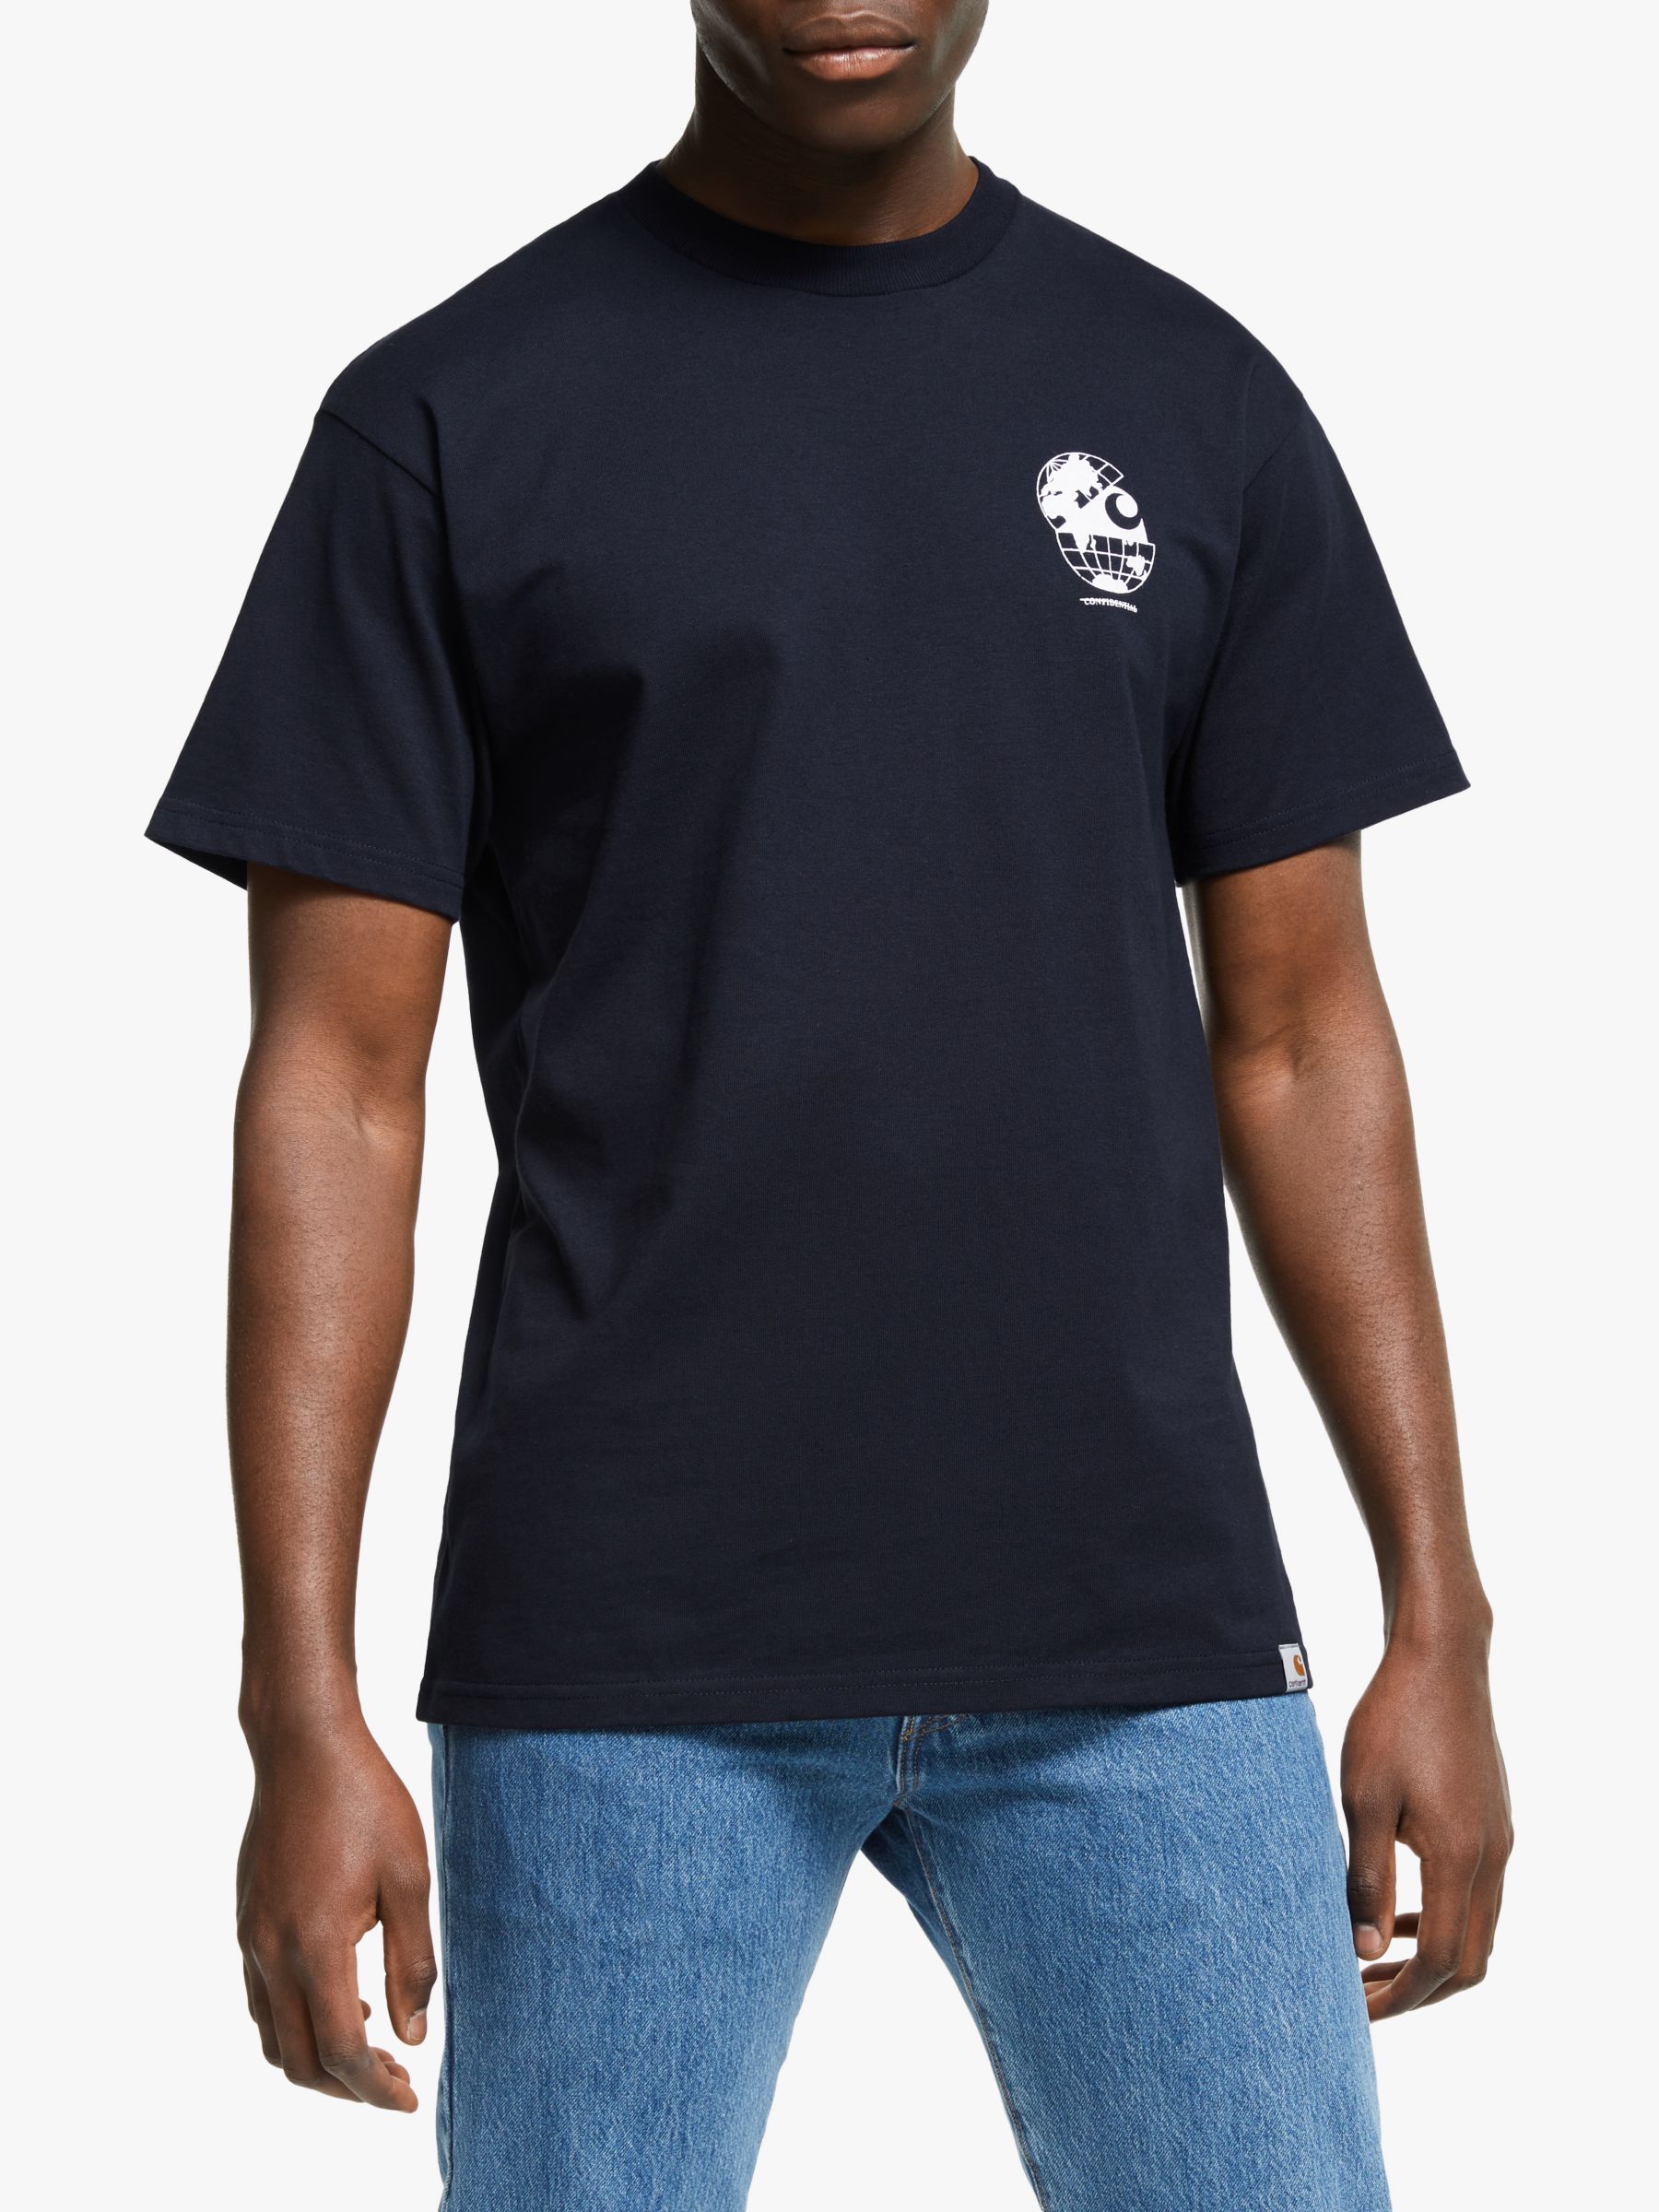 Carhartt WIP Radio Short Sleeve T-Shirt, Navy/White